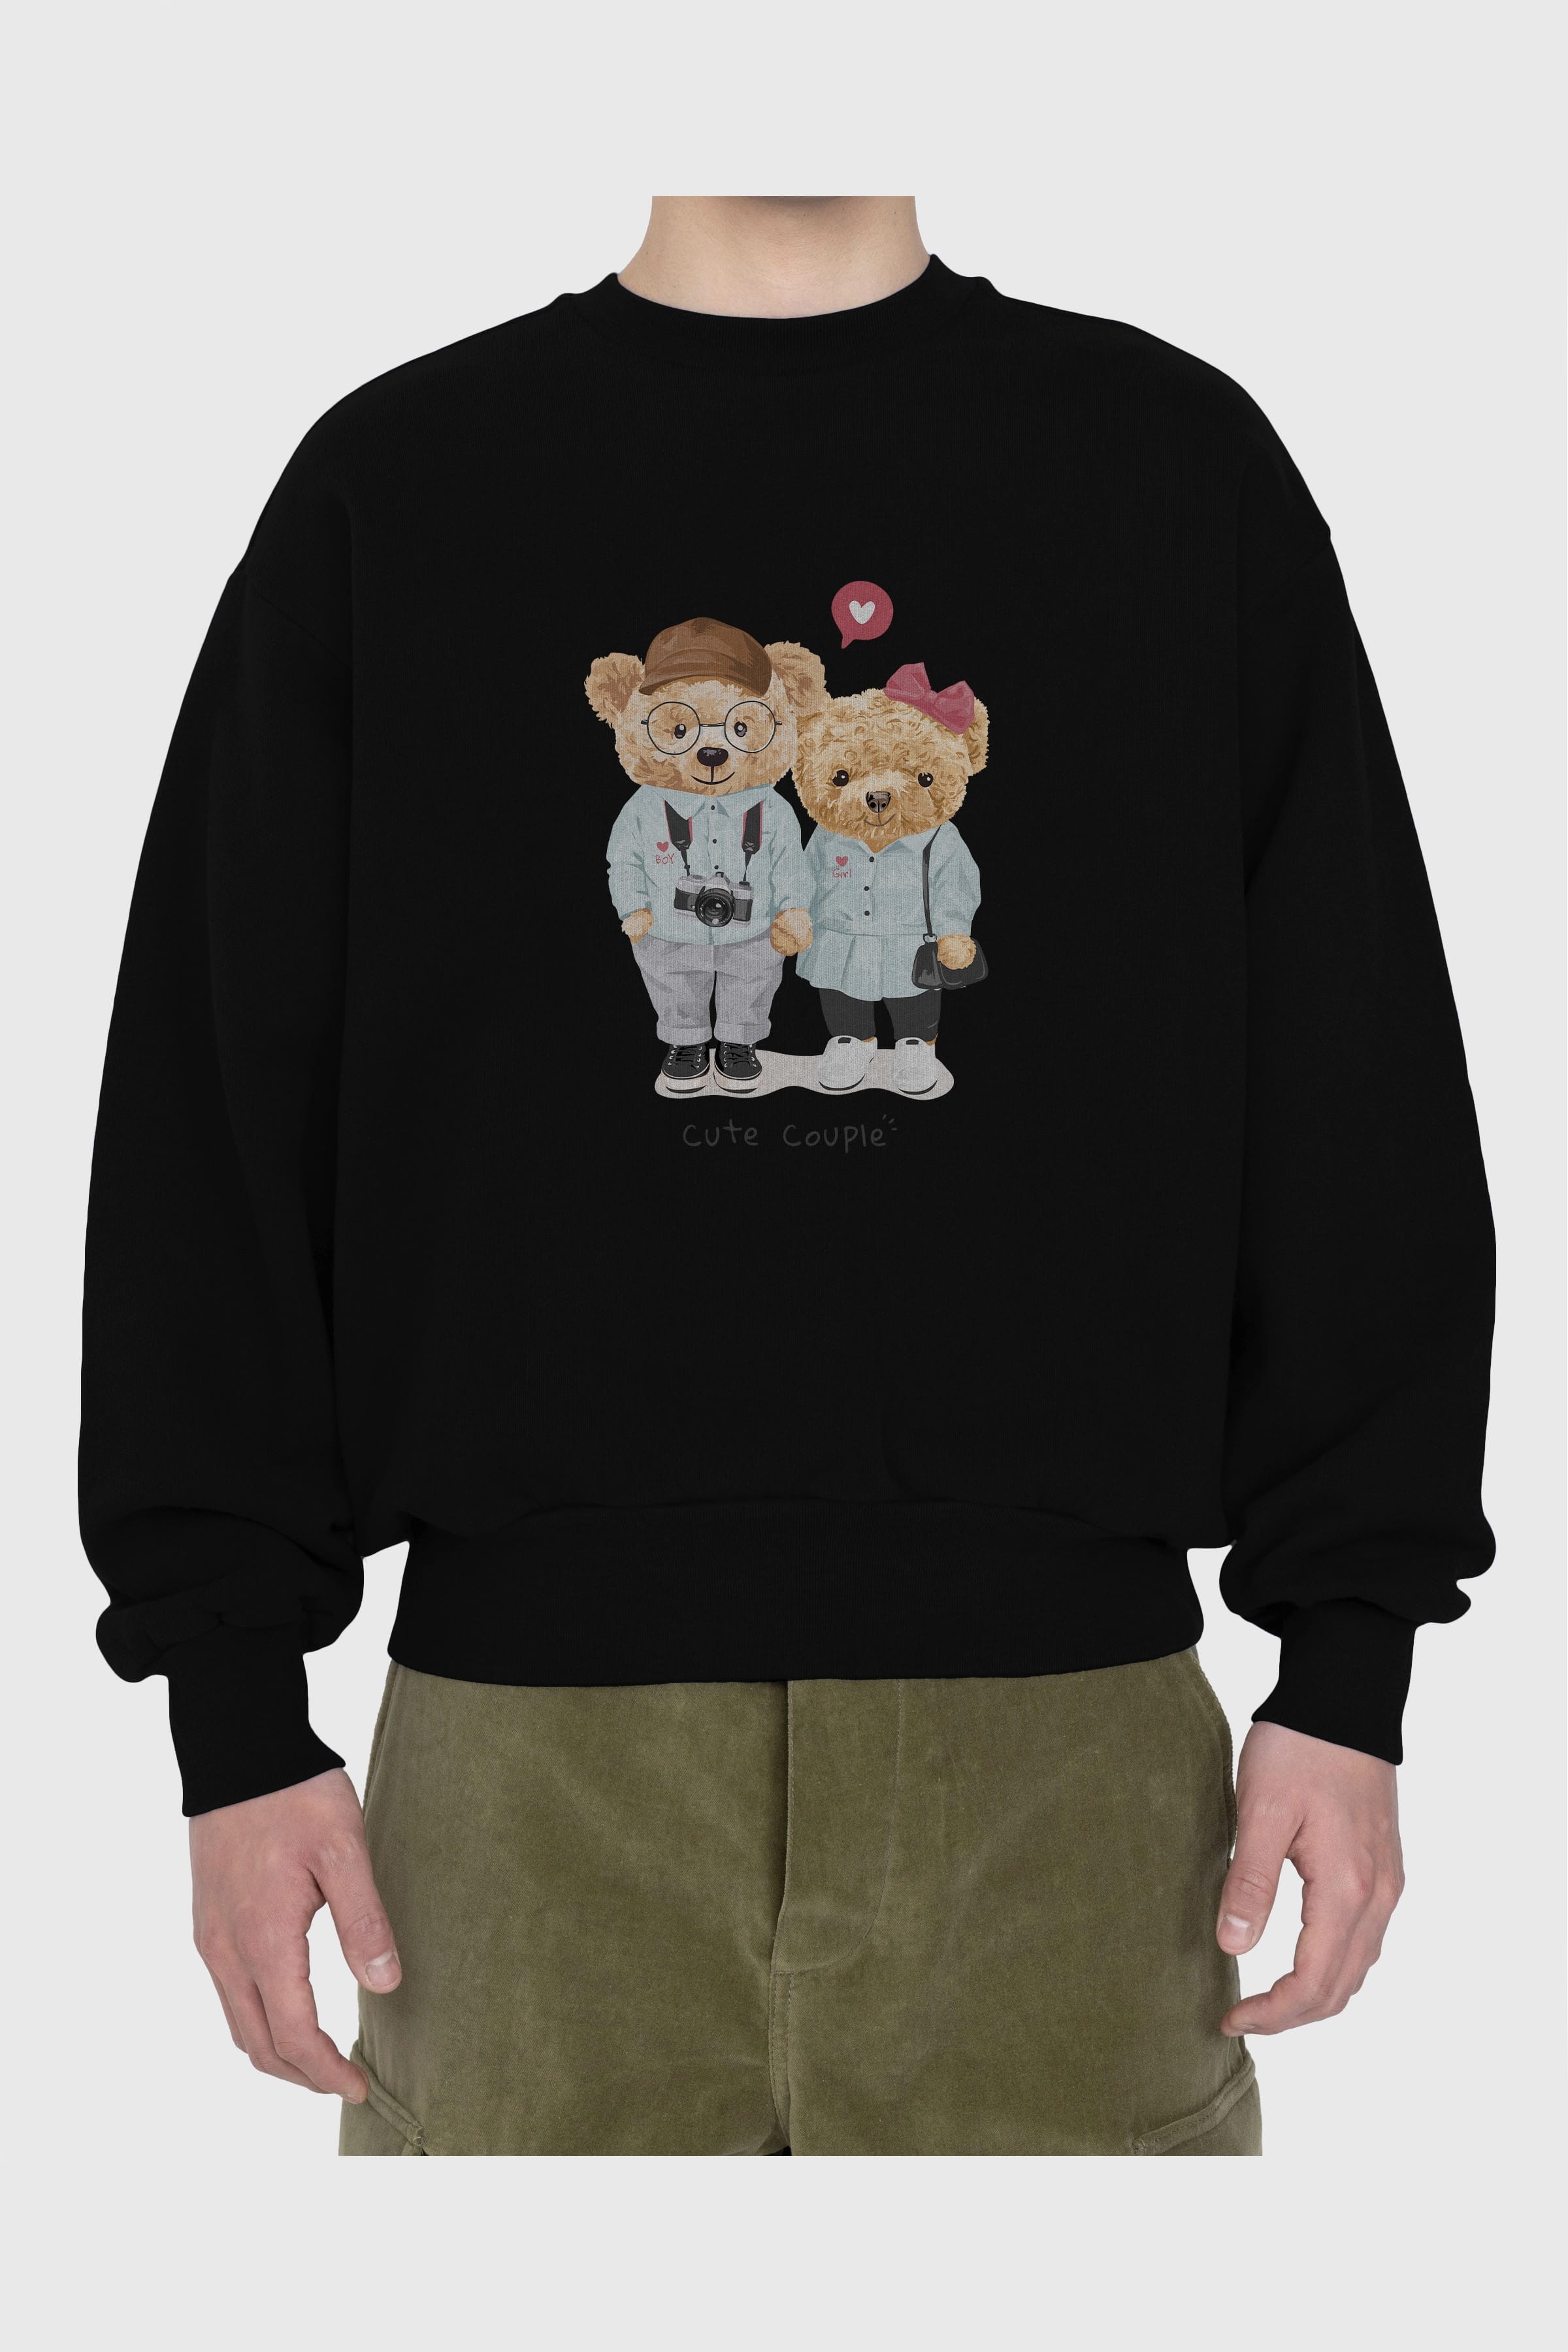 Teddy Bear Cute Couple Ön Baskılı Oversize Sweatshirt Erkek Kadın Unisex